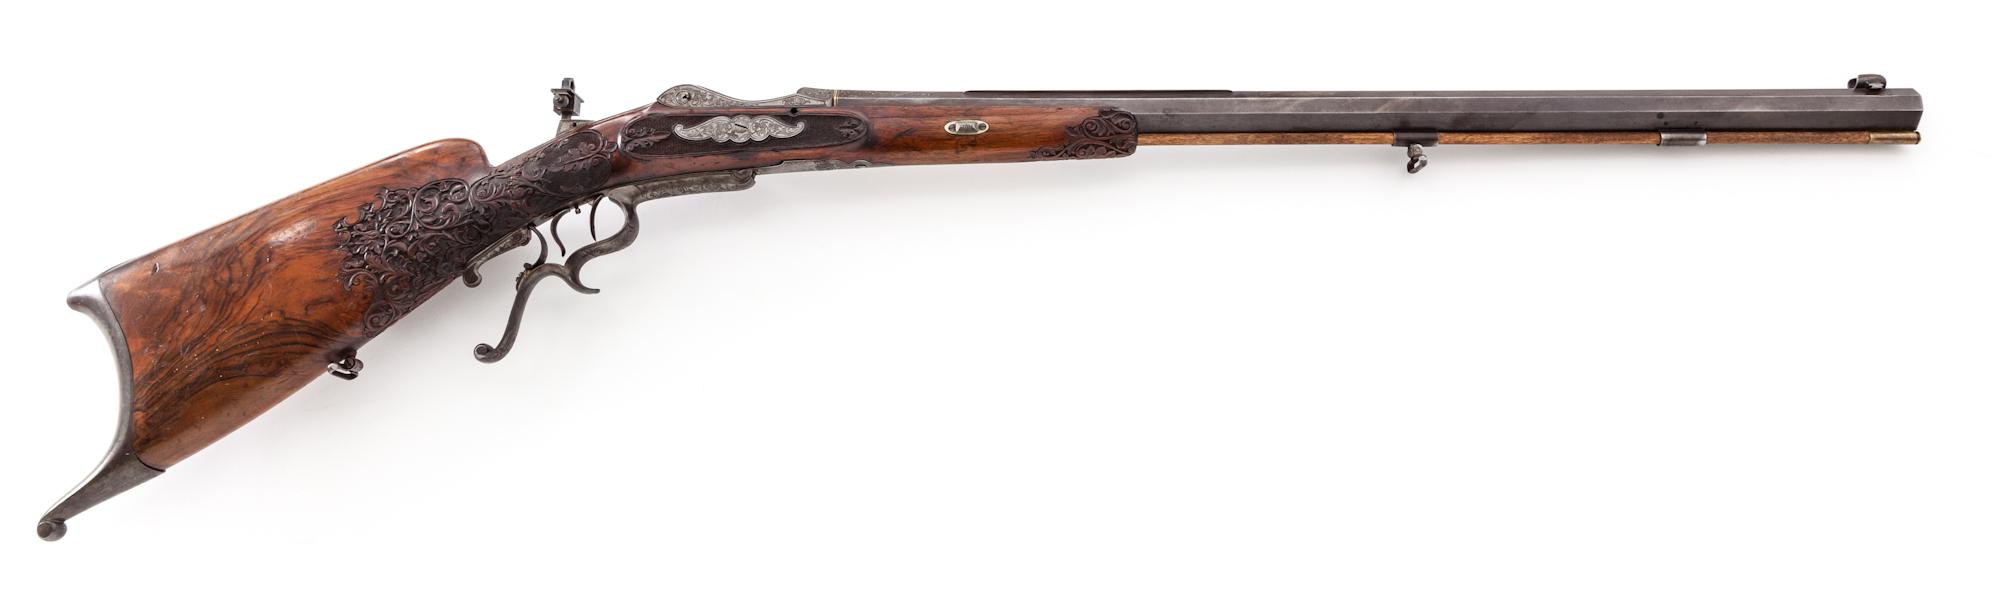 Ornate Antique Southern German Schuetzen Rifle